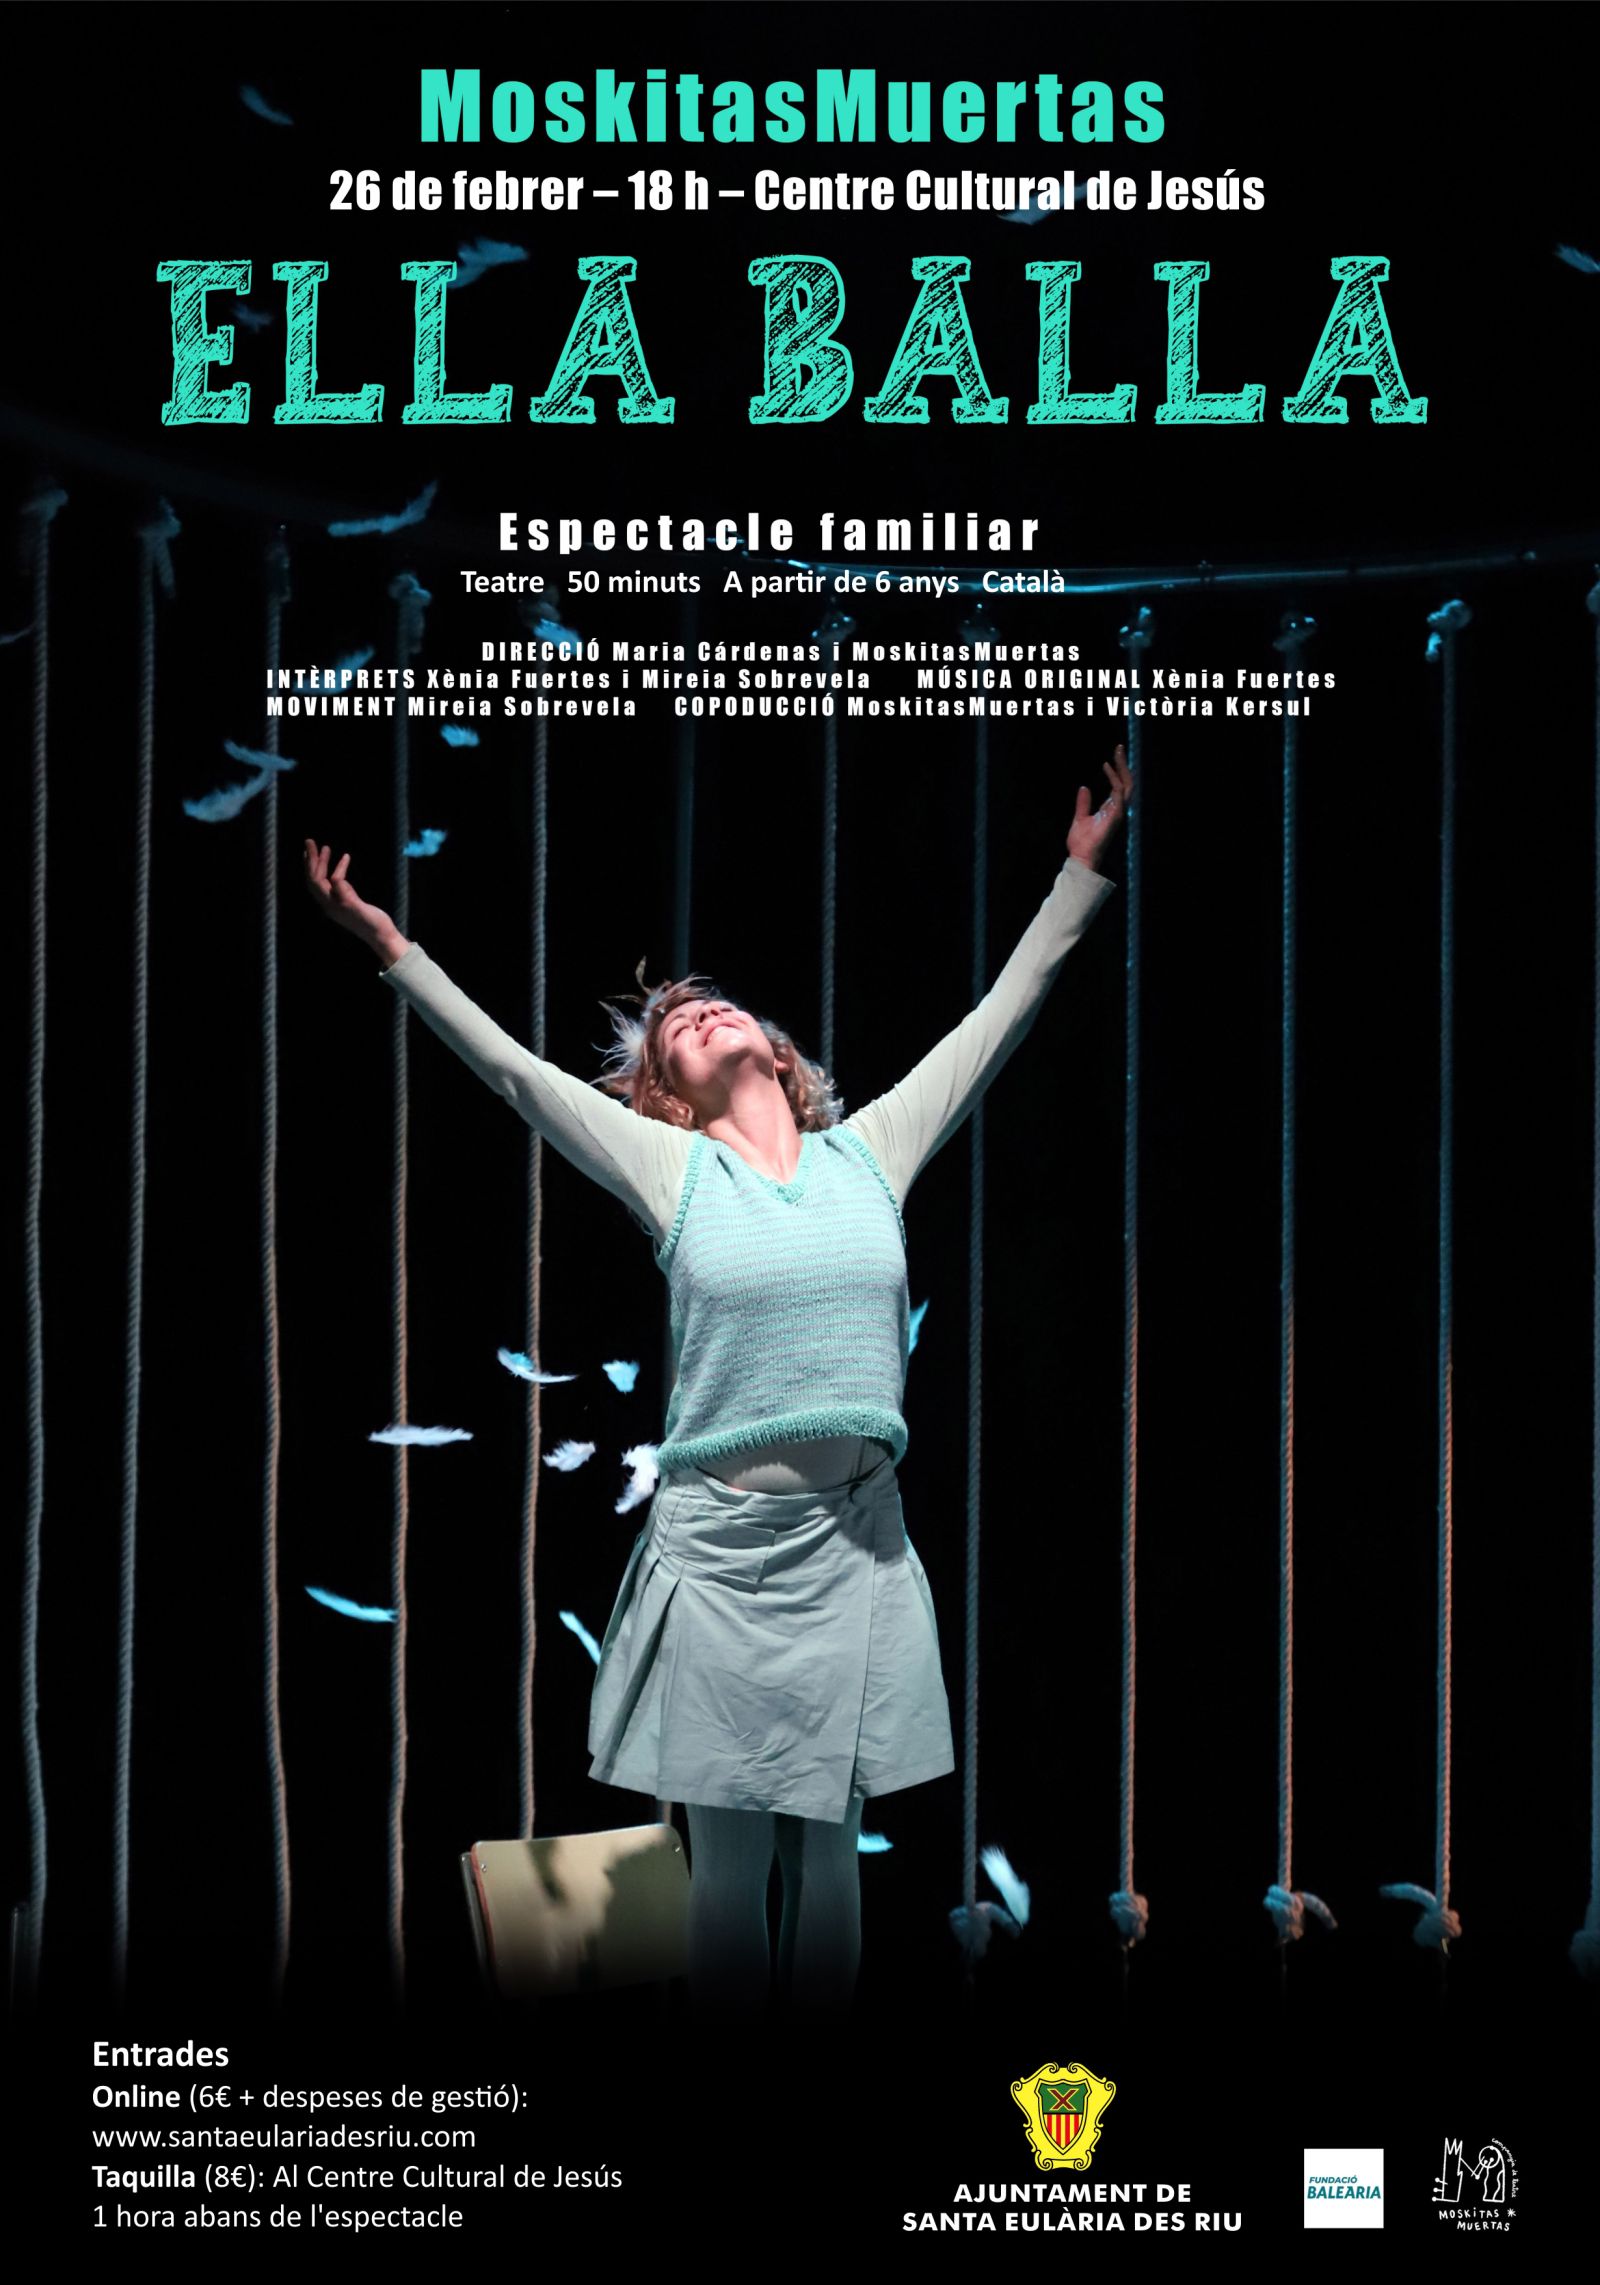 El valor de ser un mateix centra l'obra 'Ella balla', que dissabte representen a Jesús les formenterenques MoskitasMuertas